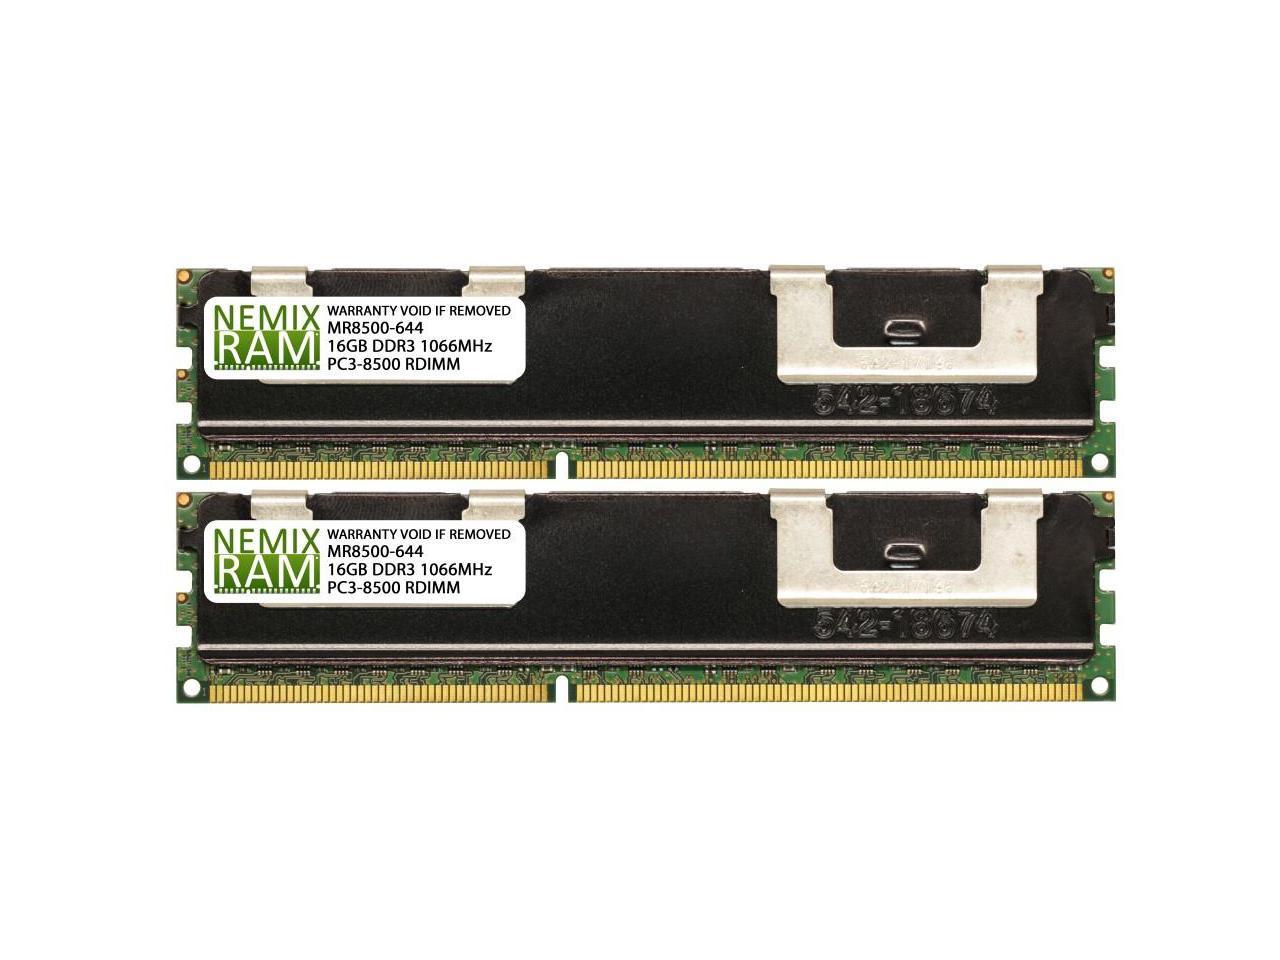 NEMIX RAM 32GB 2x16GB DDR3-1066 PC3-8500 4Rx4 ECC Registered Memory - Newegg.com